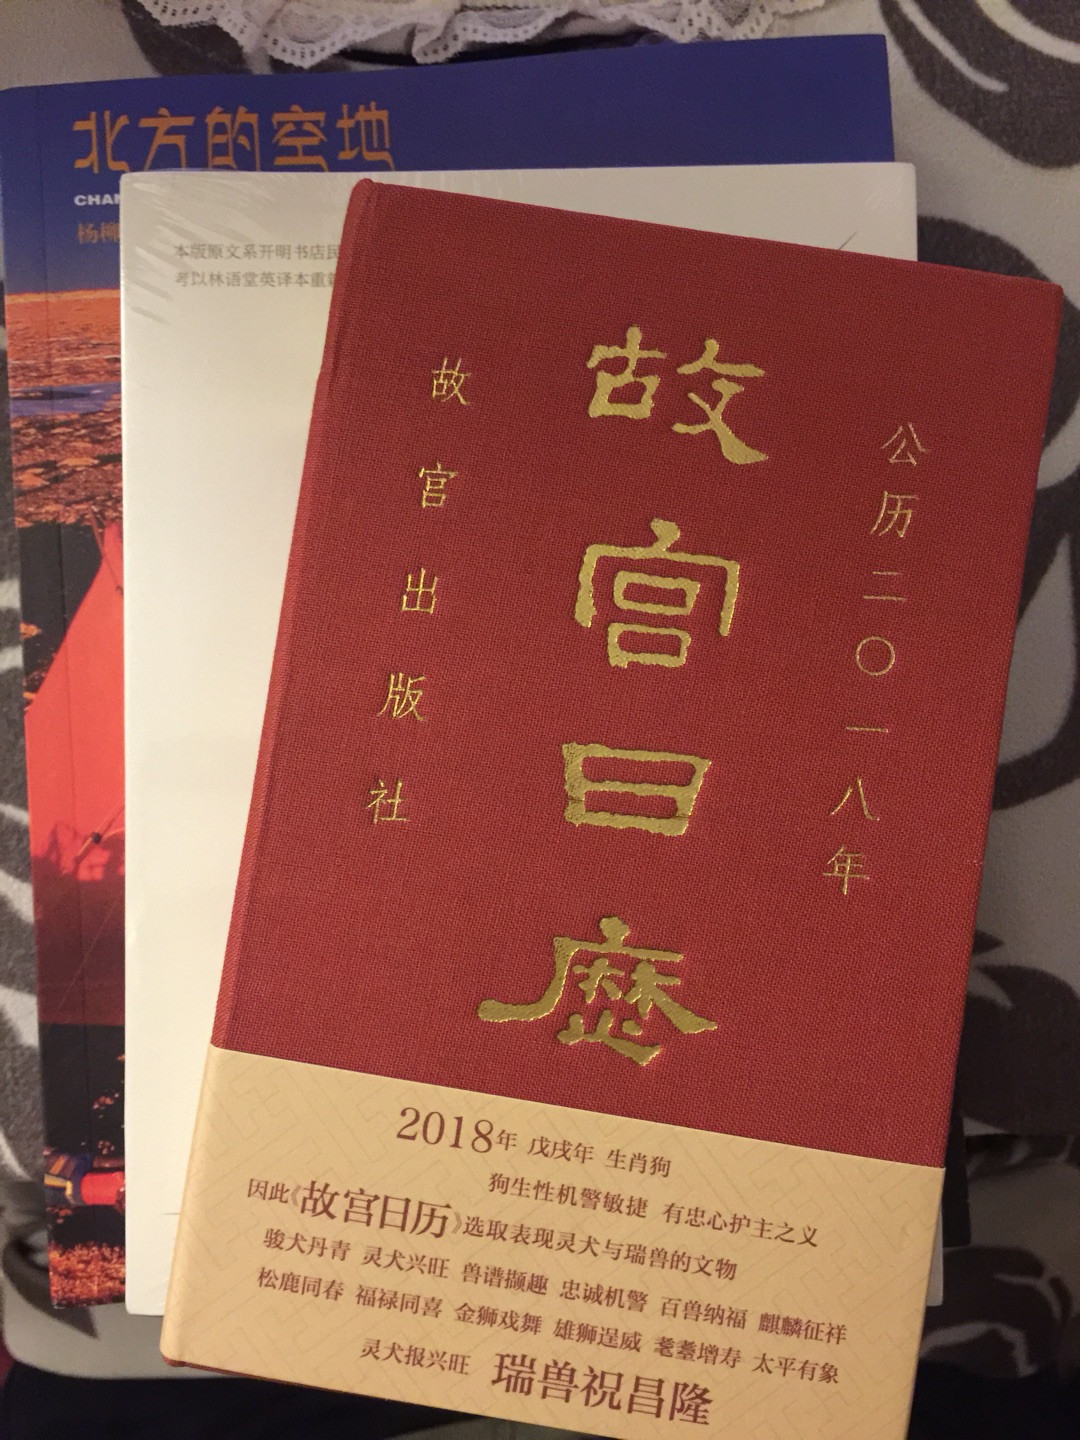 终于到货收到了，看电影《七十七天》后果断入手。正如编者推荐：“一本当代中国人不得不看的书”。